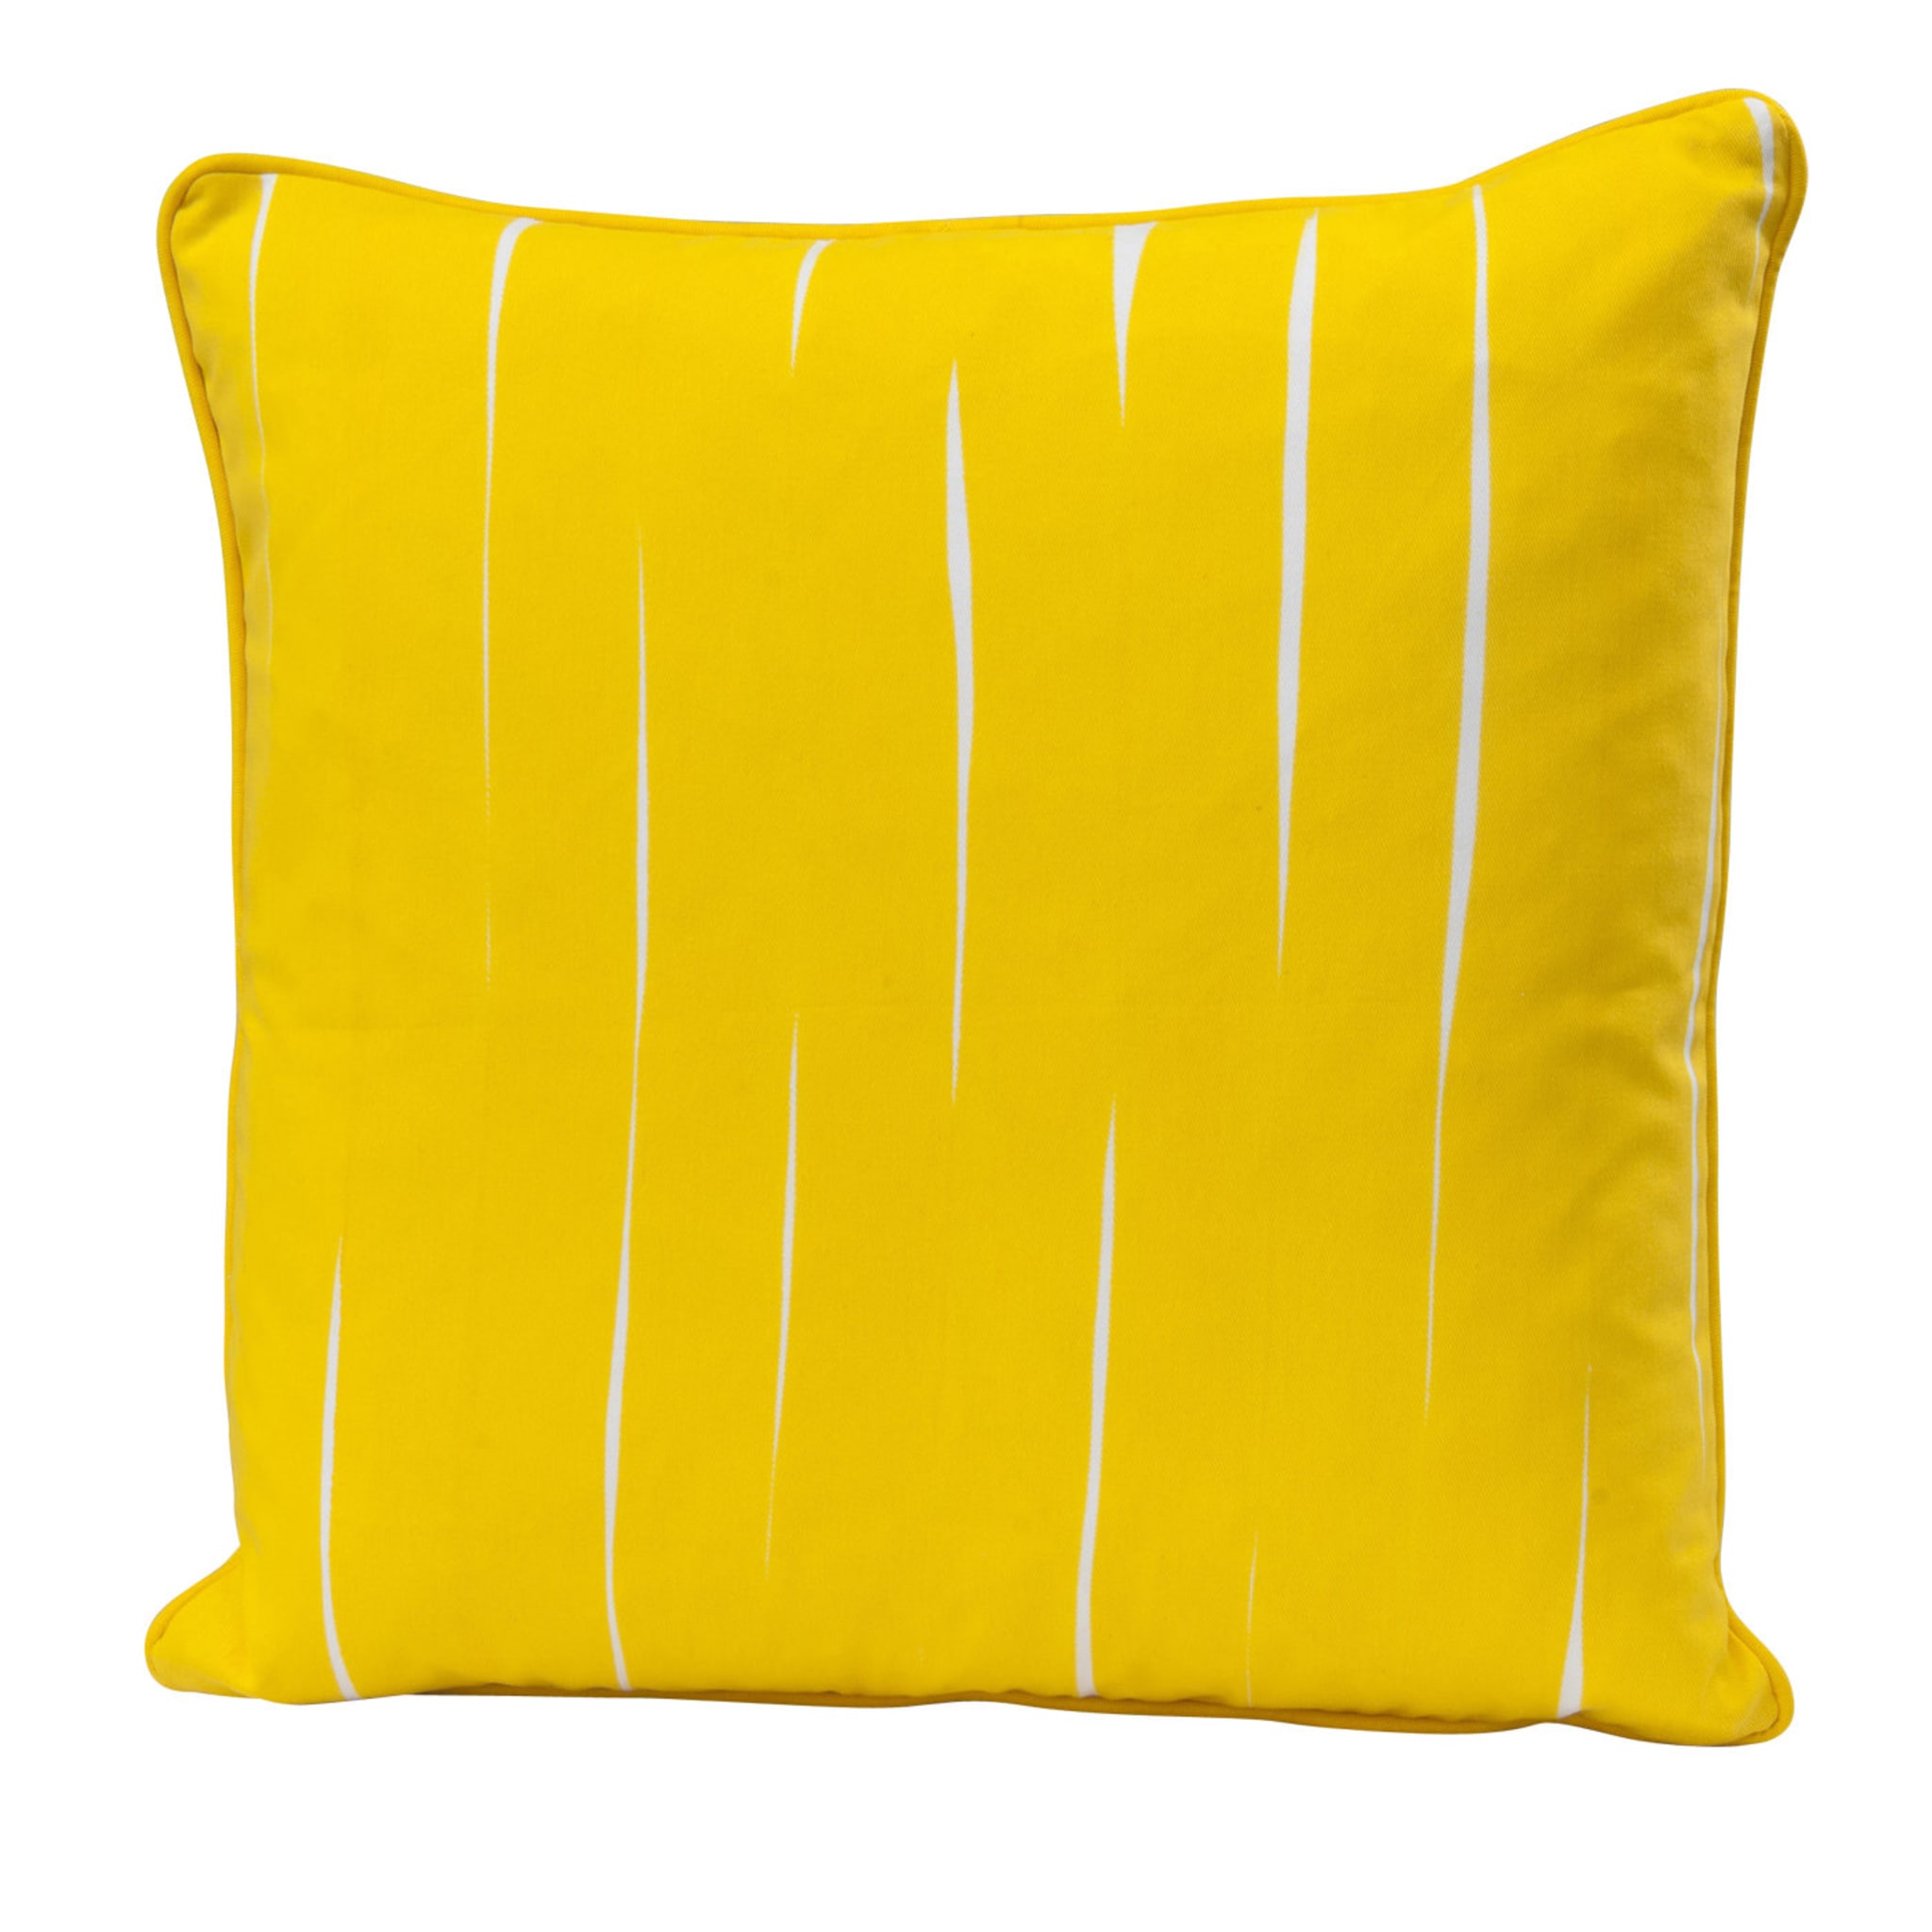 Unito Yellow Cushion - Main view